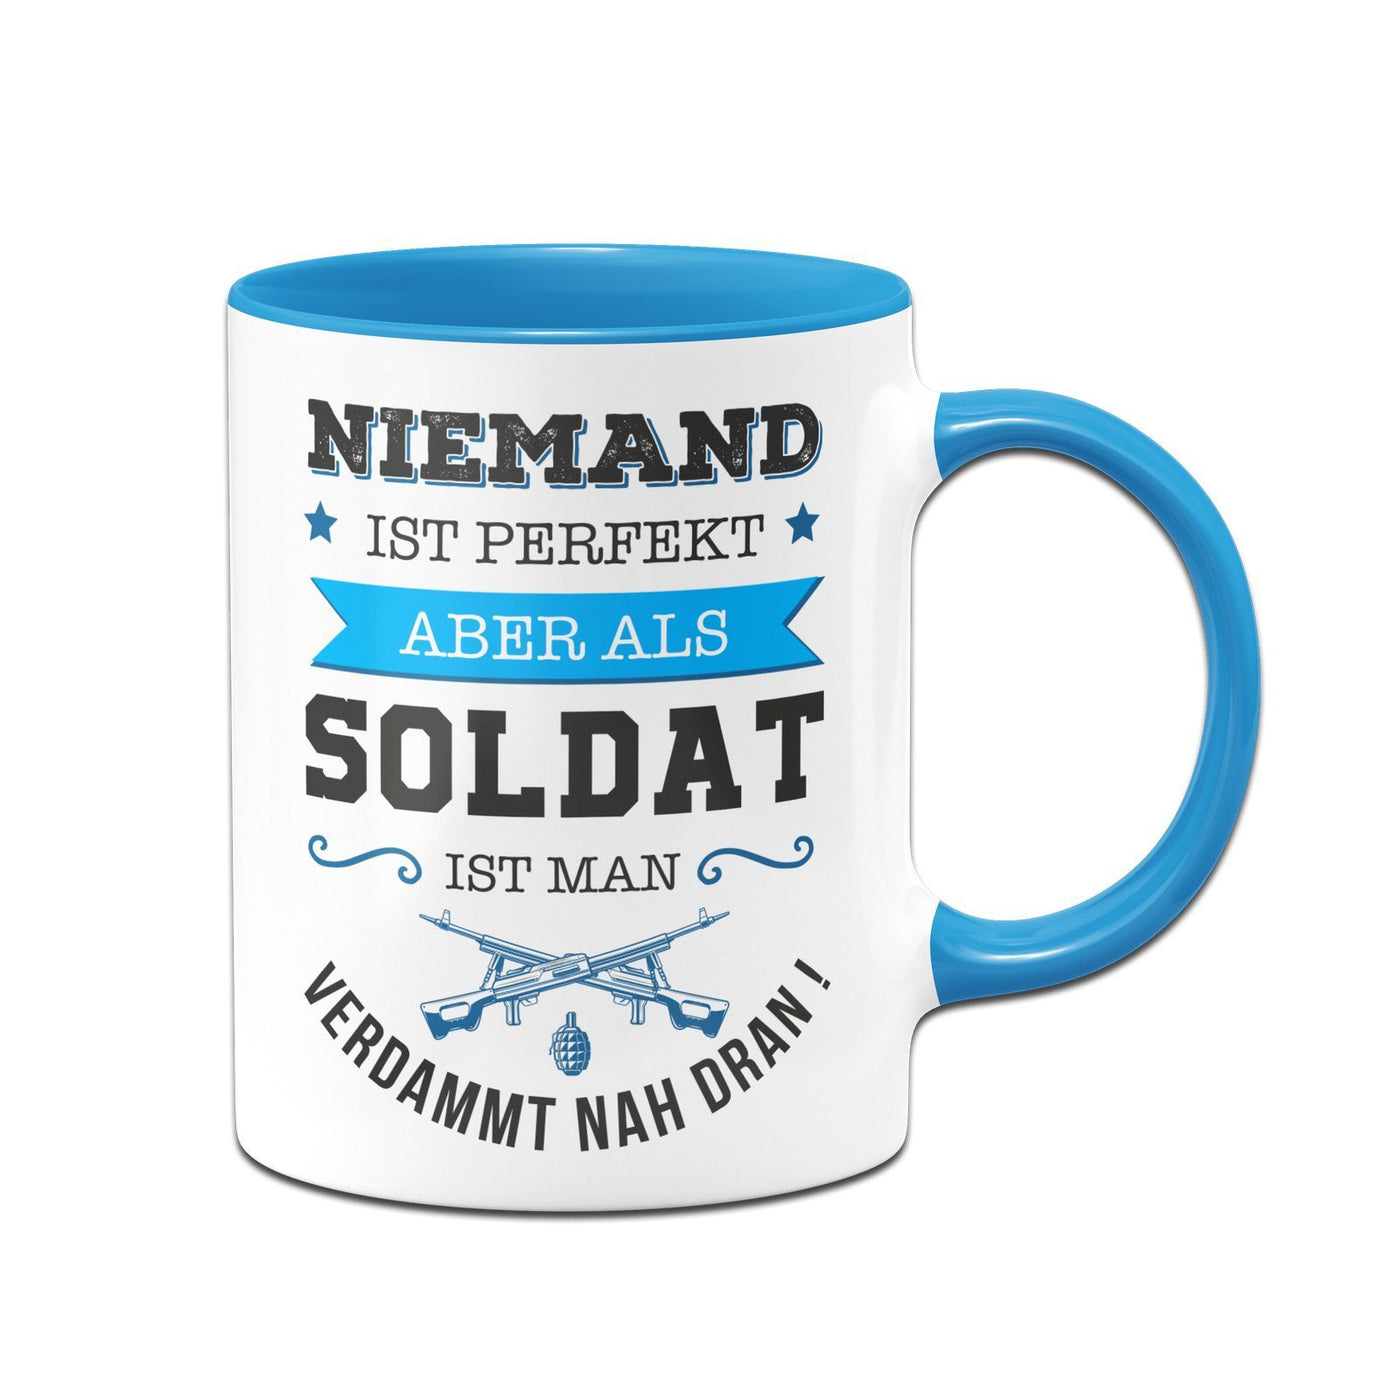 Bild: Tasse - Niemand ist perfekt aber als Soldat ist man verdammt nah dran! Geschenkidee